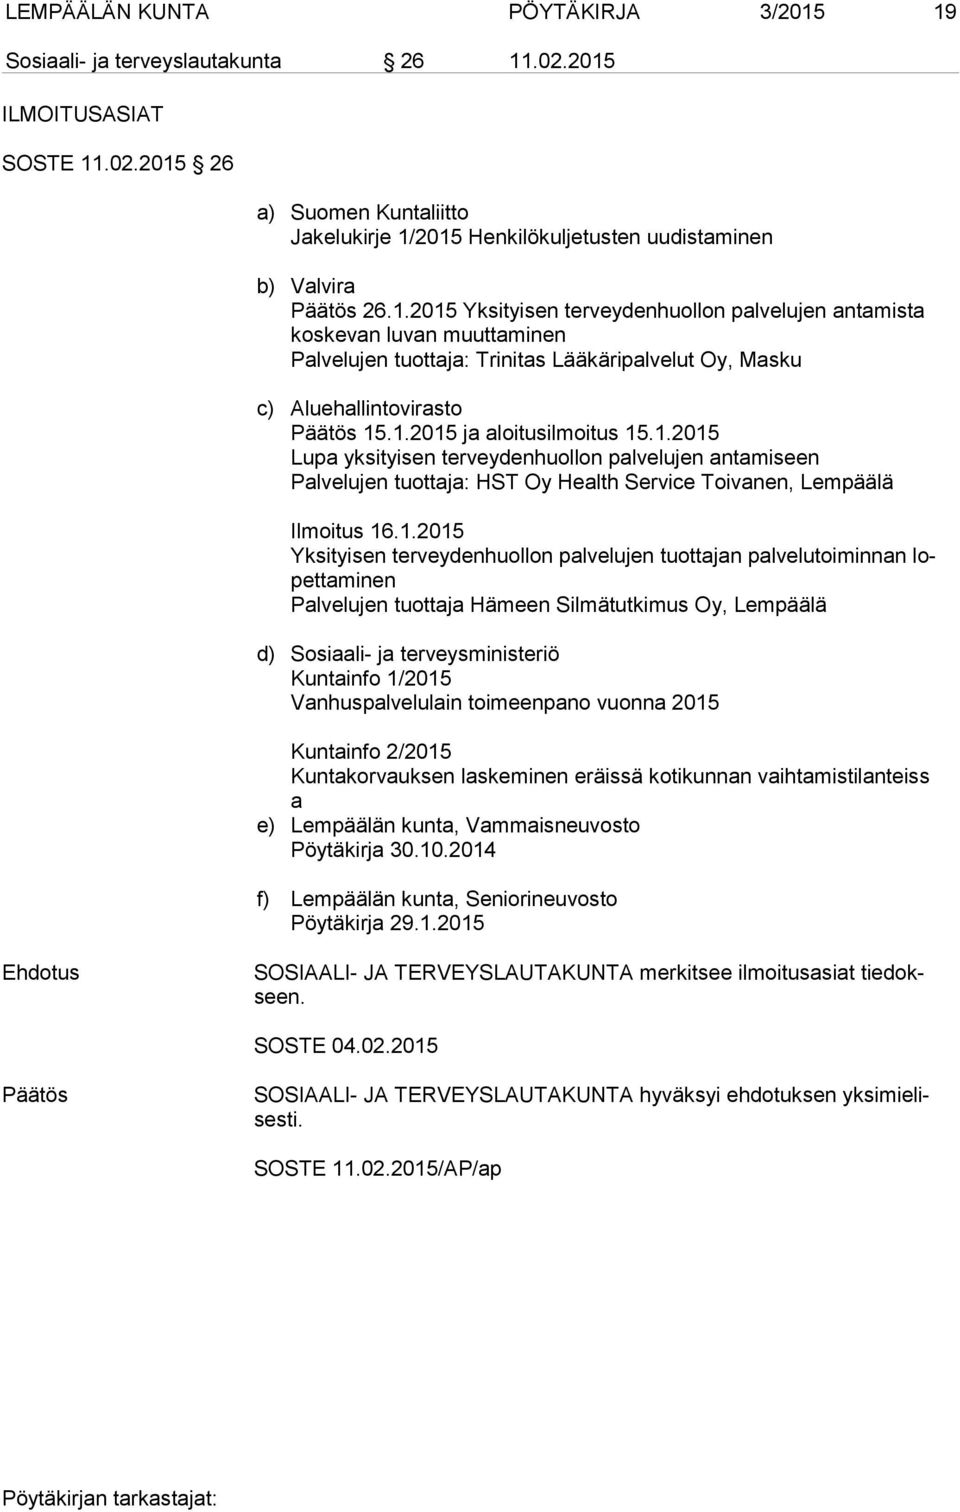 1.2015 Lupa yksityisen terveydenhuollon palvelujen antamiseen Palvelujen tuottaja: HST Oy Health Service Toivanen, Lempäälä Ilmoitus 16.1.2015 Yksityisen terveydenhuollon palvelujen tuottajan